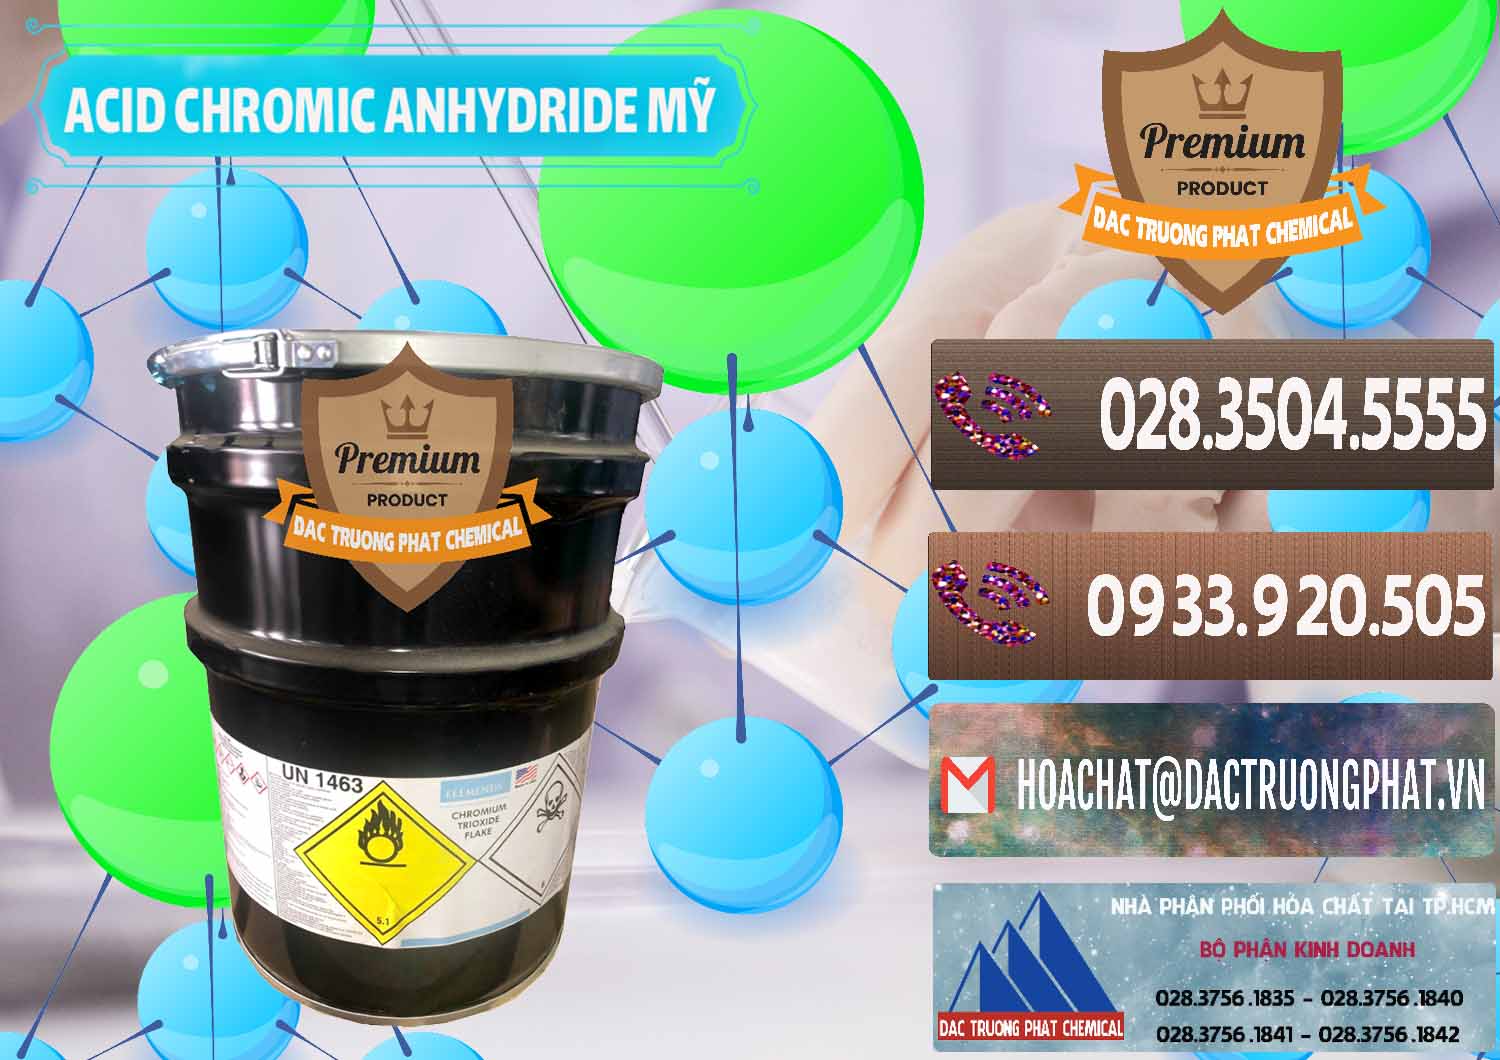 Nơi chuyên phân phối và bán Acid Chromic Anhydride - Cromic CRO3 USA Mỹ - 0364 - Công ty bán - cung cấp hóa chất tại TP.HCM - hoachatviet.net